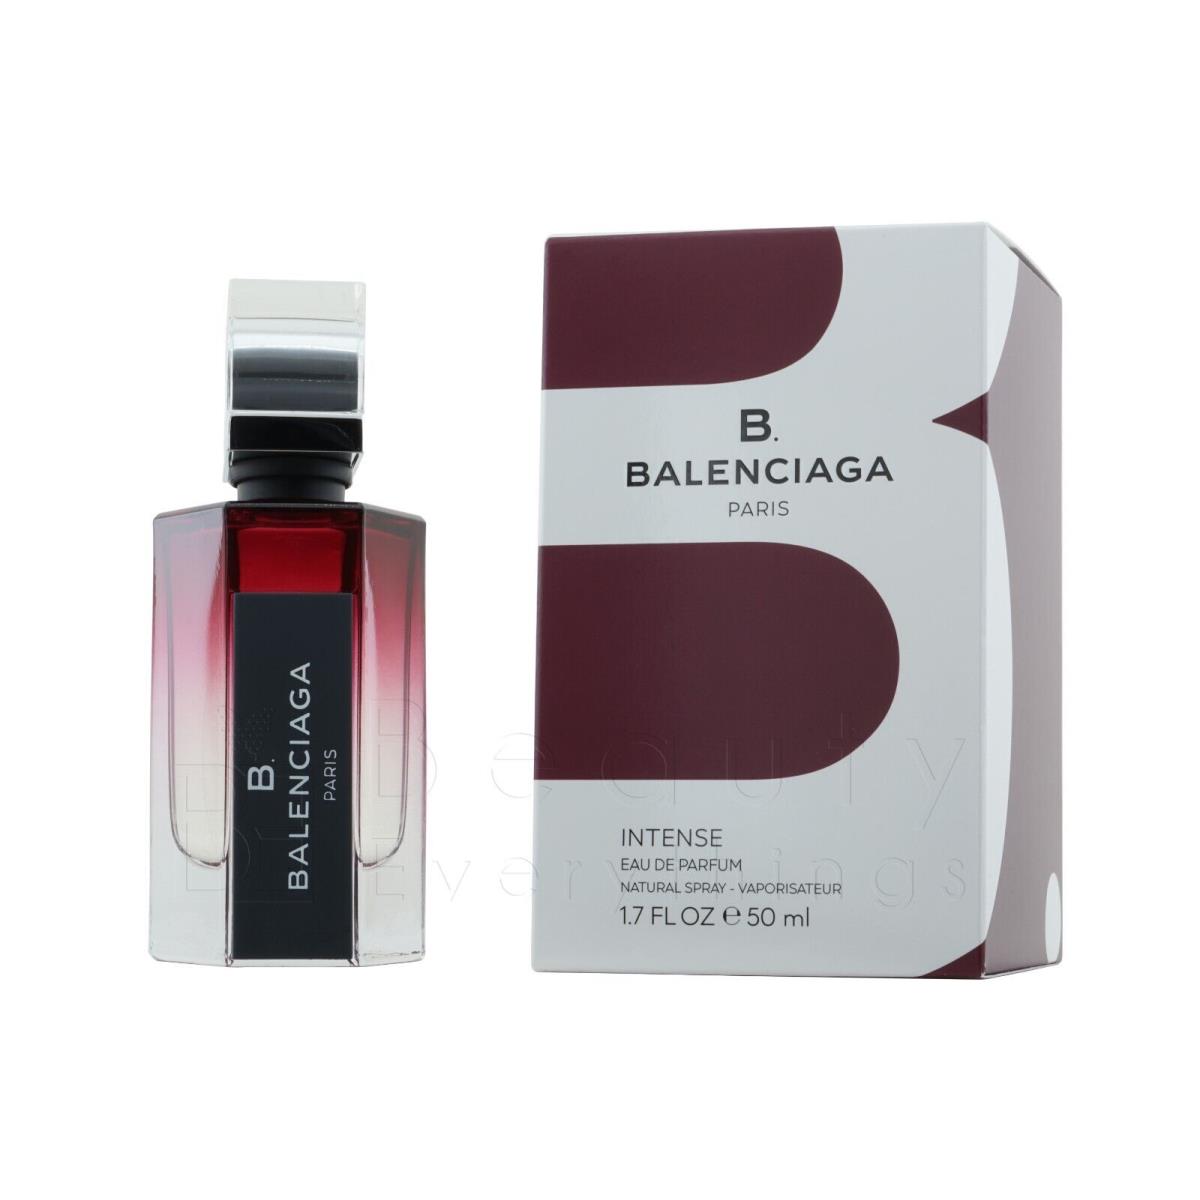 B Balenciaga Intense by Balenciaga 1.7oz / 50ml Edp Spray For Women